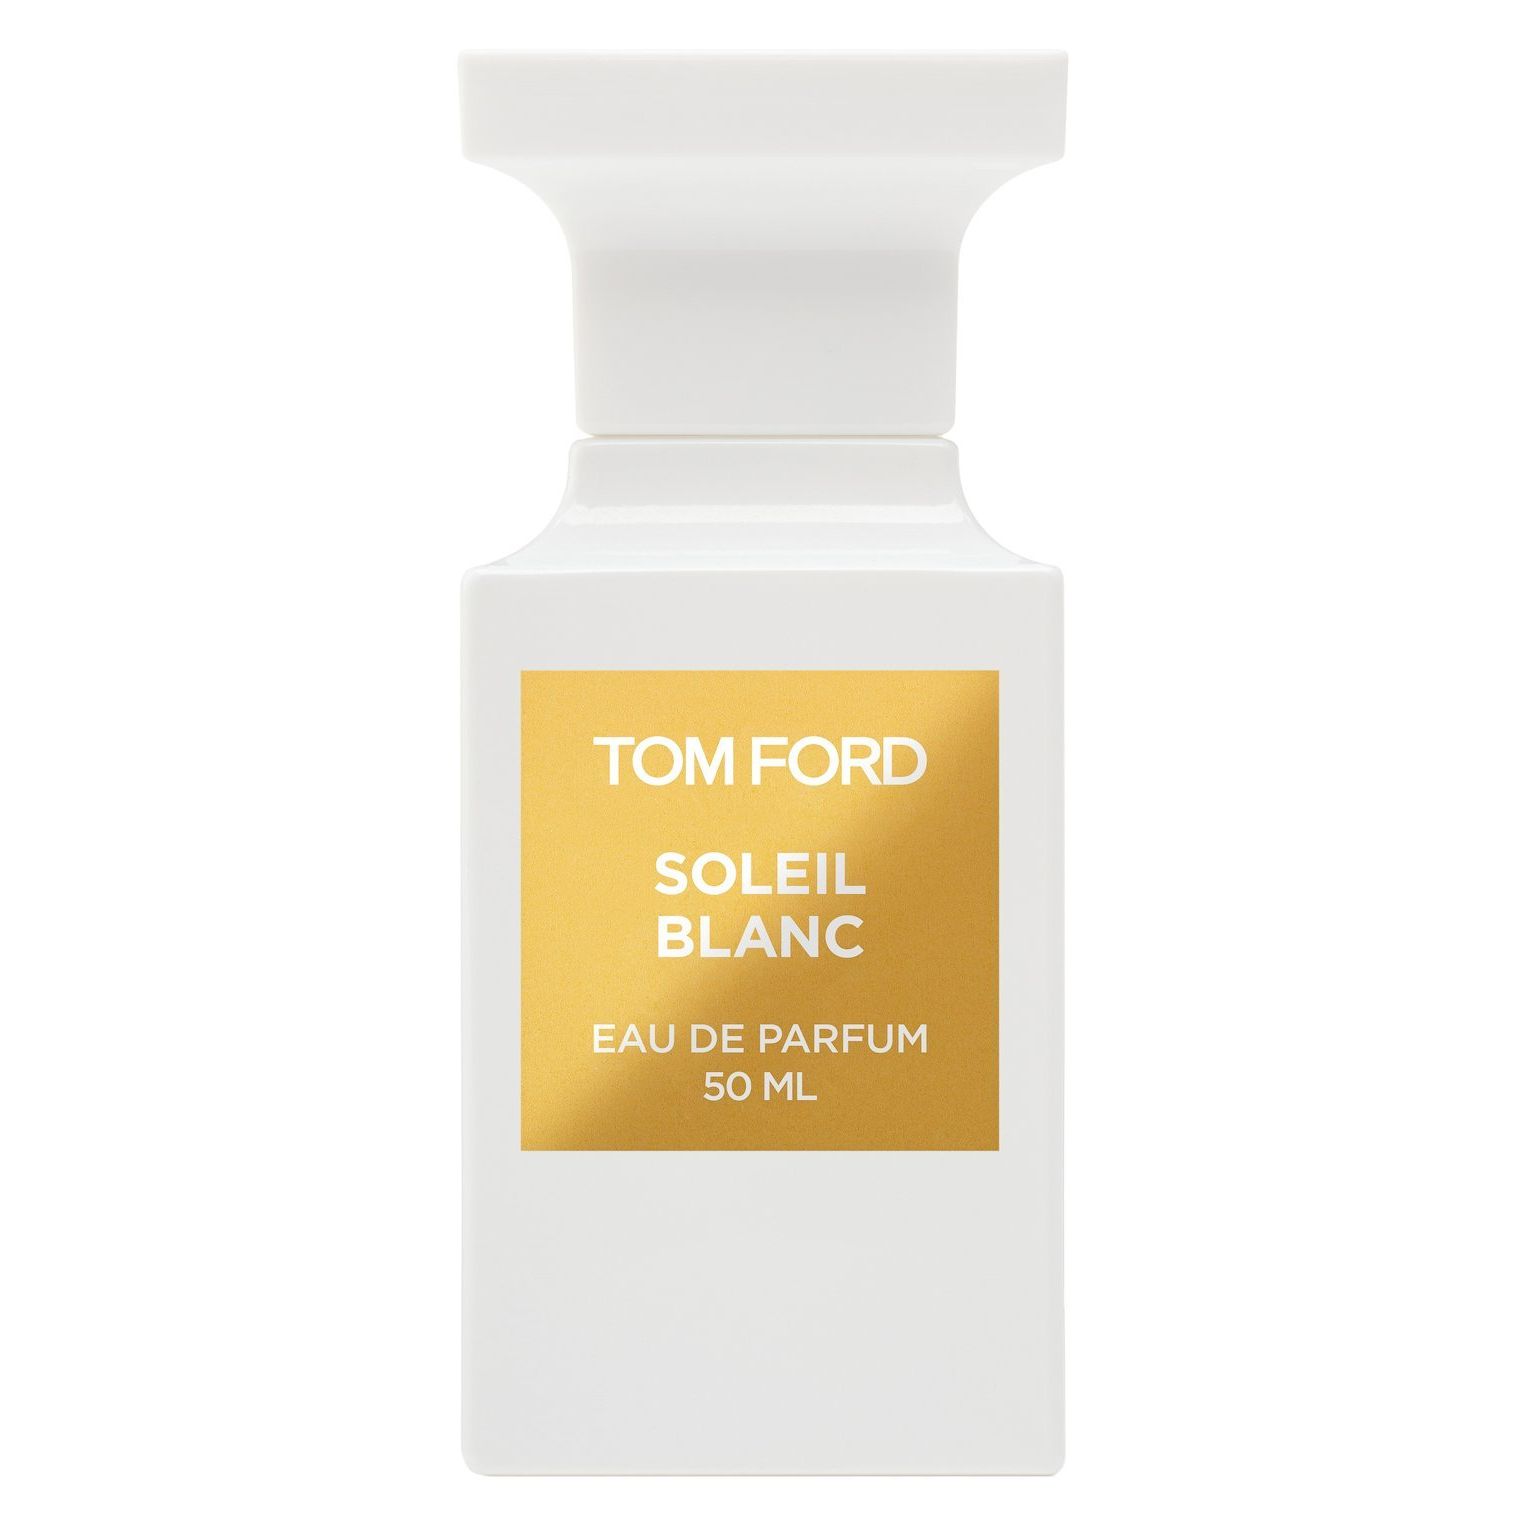 Вода парфюмерная Tom Ford Soleil Blanc, унисекс, 50 мл